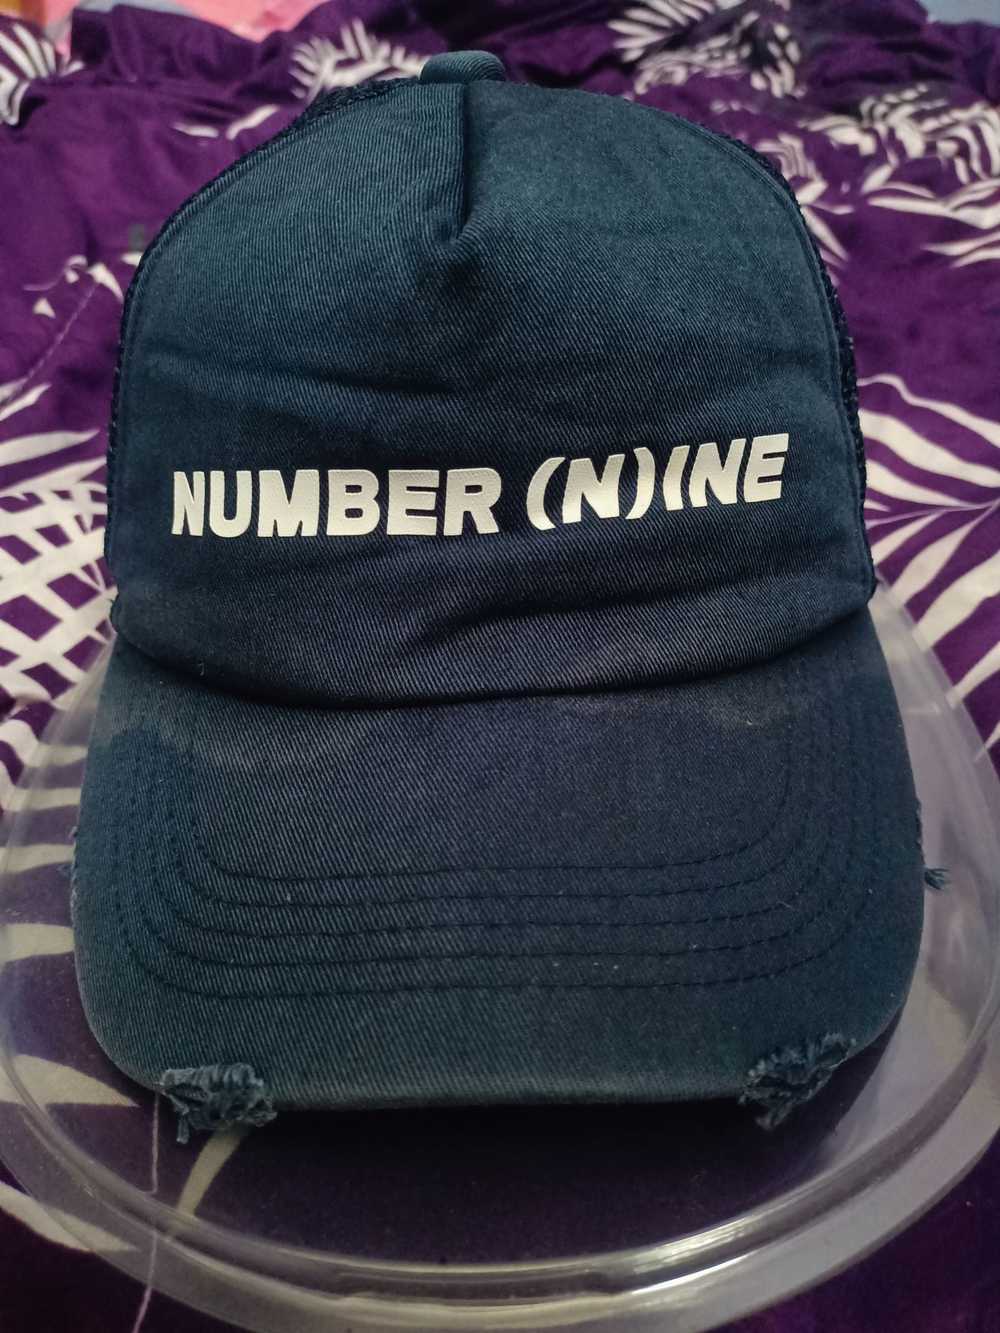 Japanese Brand × Number (N)ine × Trucker Hat NUMB… - image 2